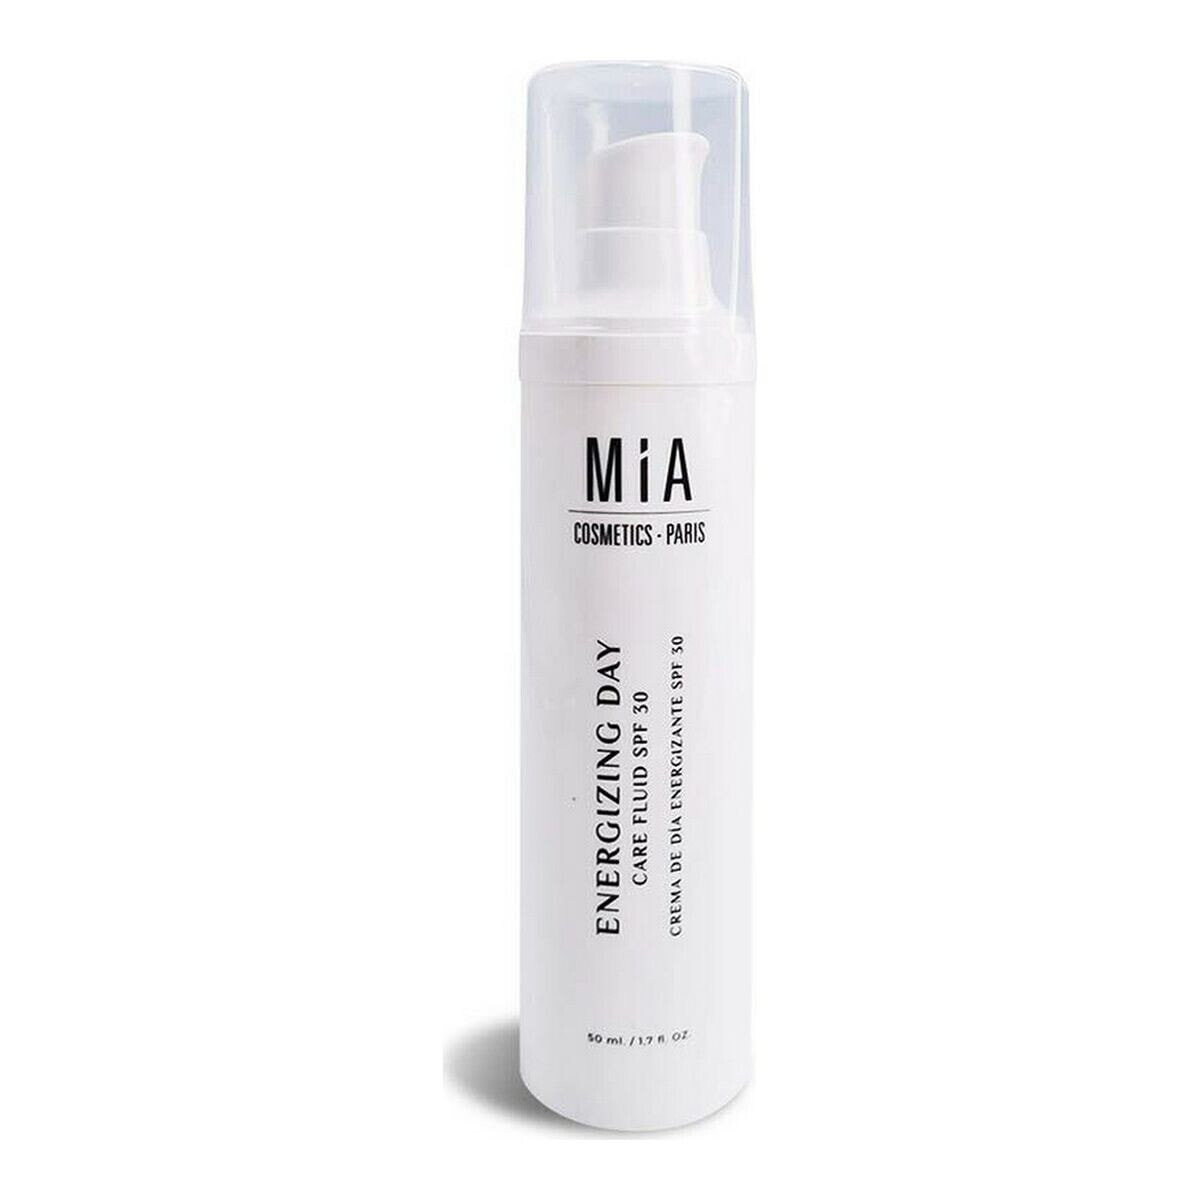 Увлажняющий дневной крем Energizing Day Mia Cosmetics Paris SPF 30 (50 ml)